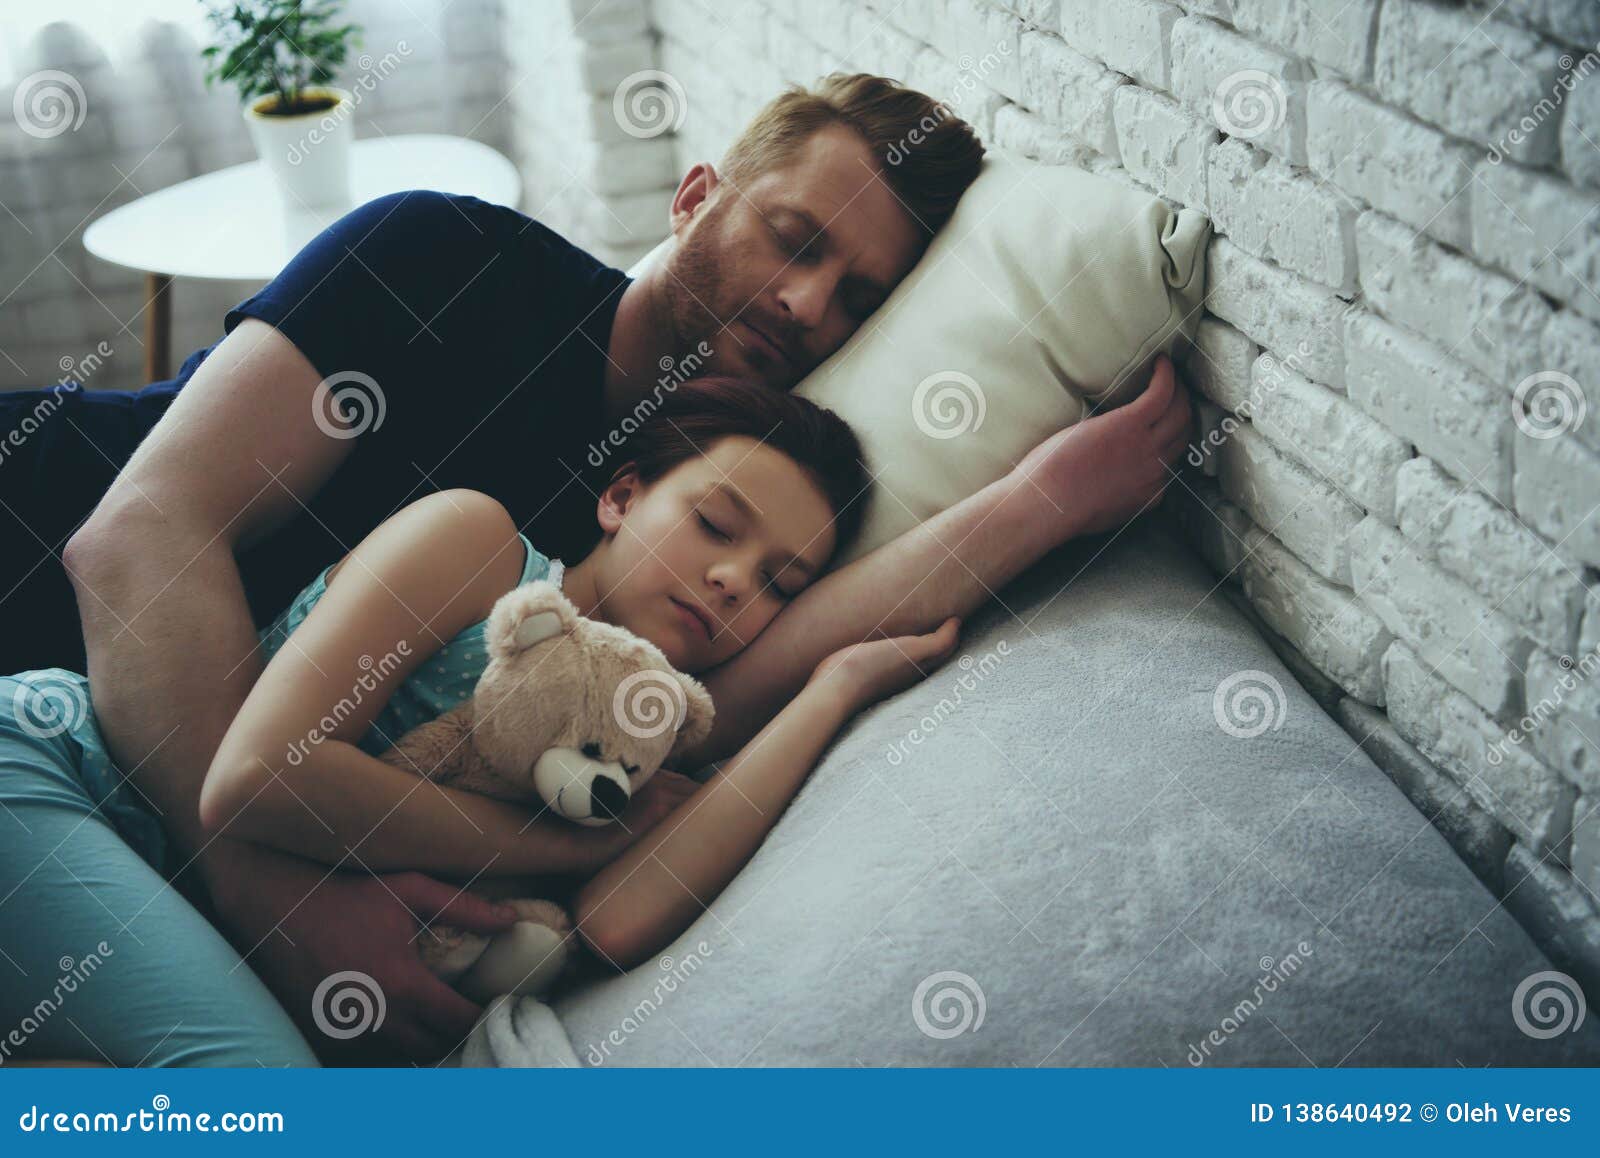 爸爸睡觉素材-爸爸睡觉图片-爸爸睡觉素材图片下载-觅知网